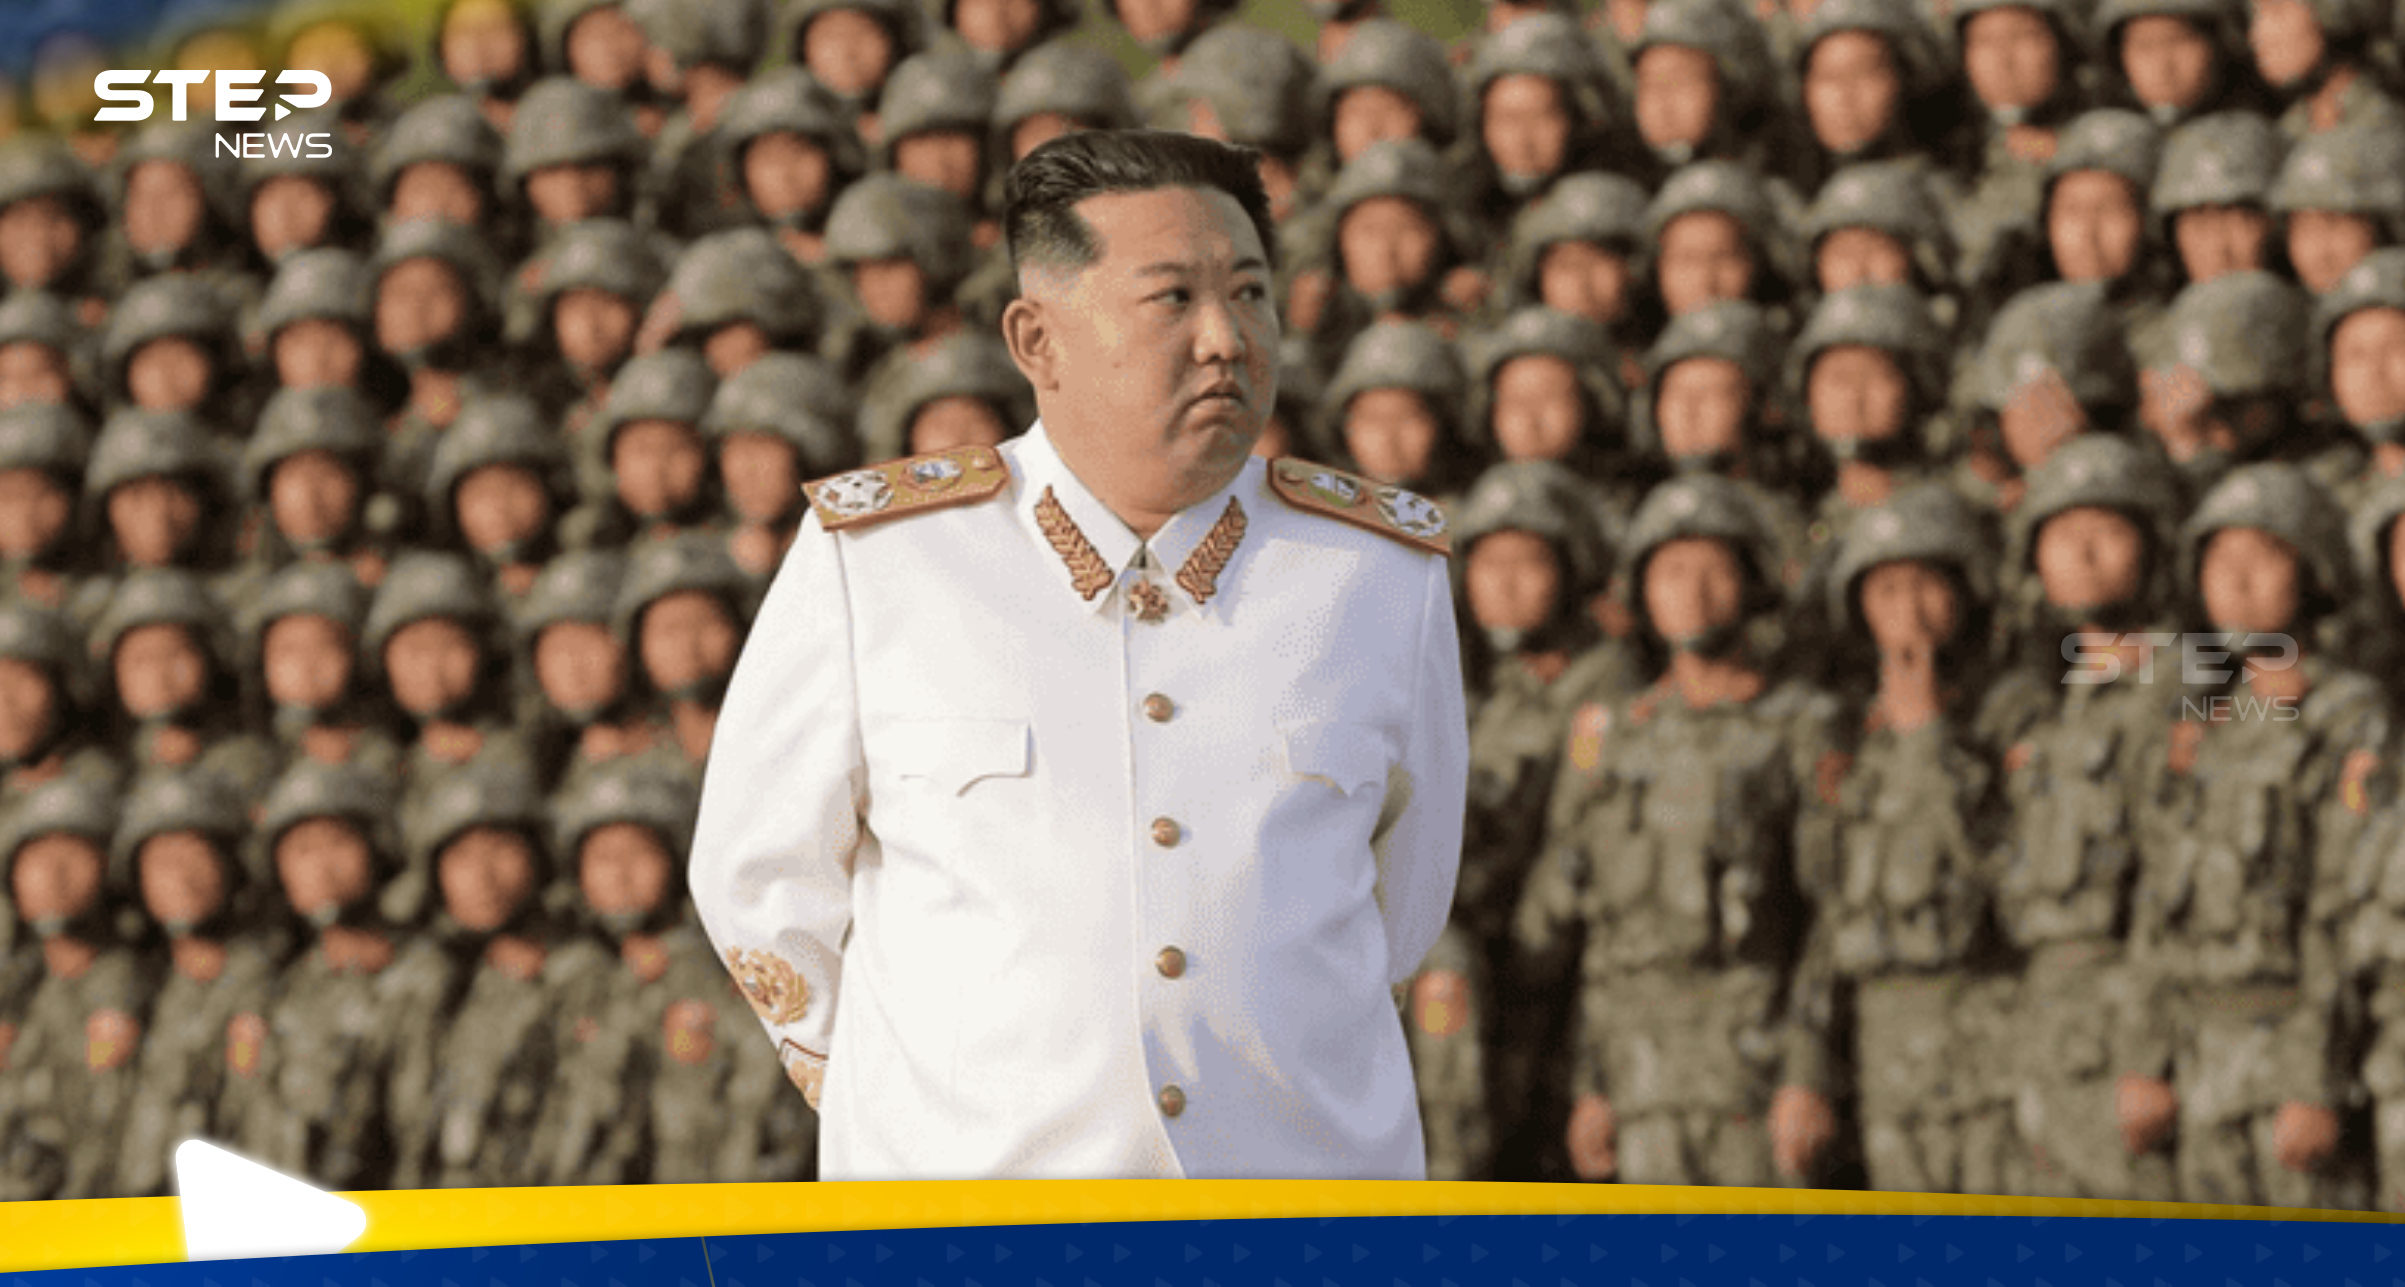 كوريا الشمالية تحذر من "أشباح الجيش الإمبراطوري" وخطر يحدق بالعالم